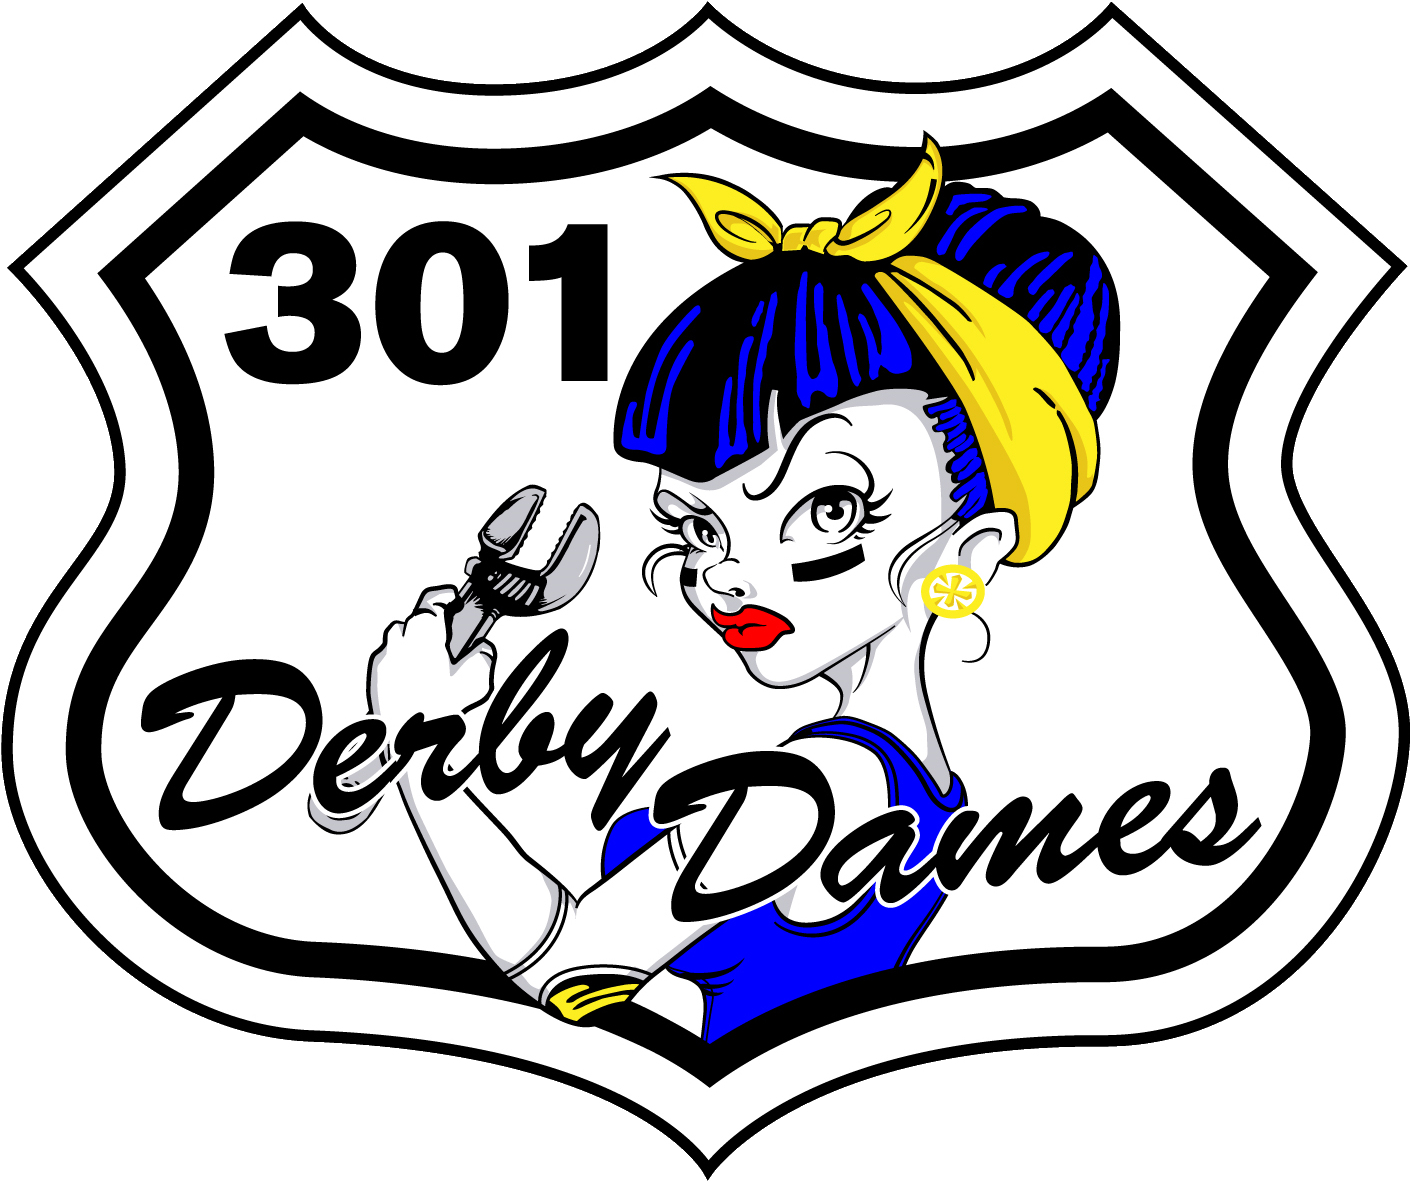 301 Derby Dames - Roller Derby (1563x1326)